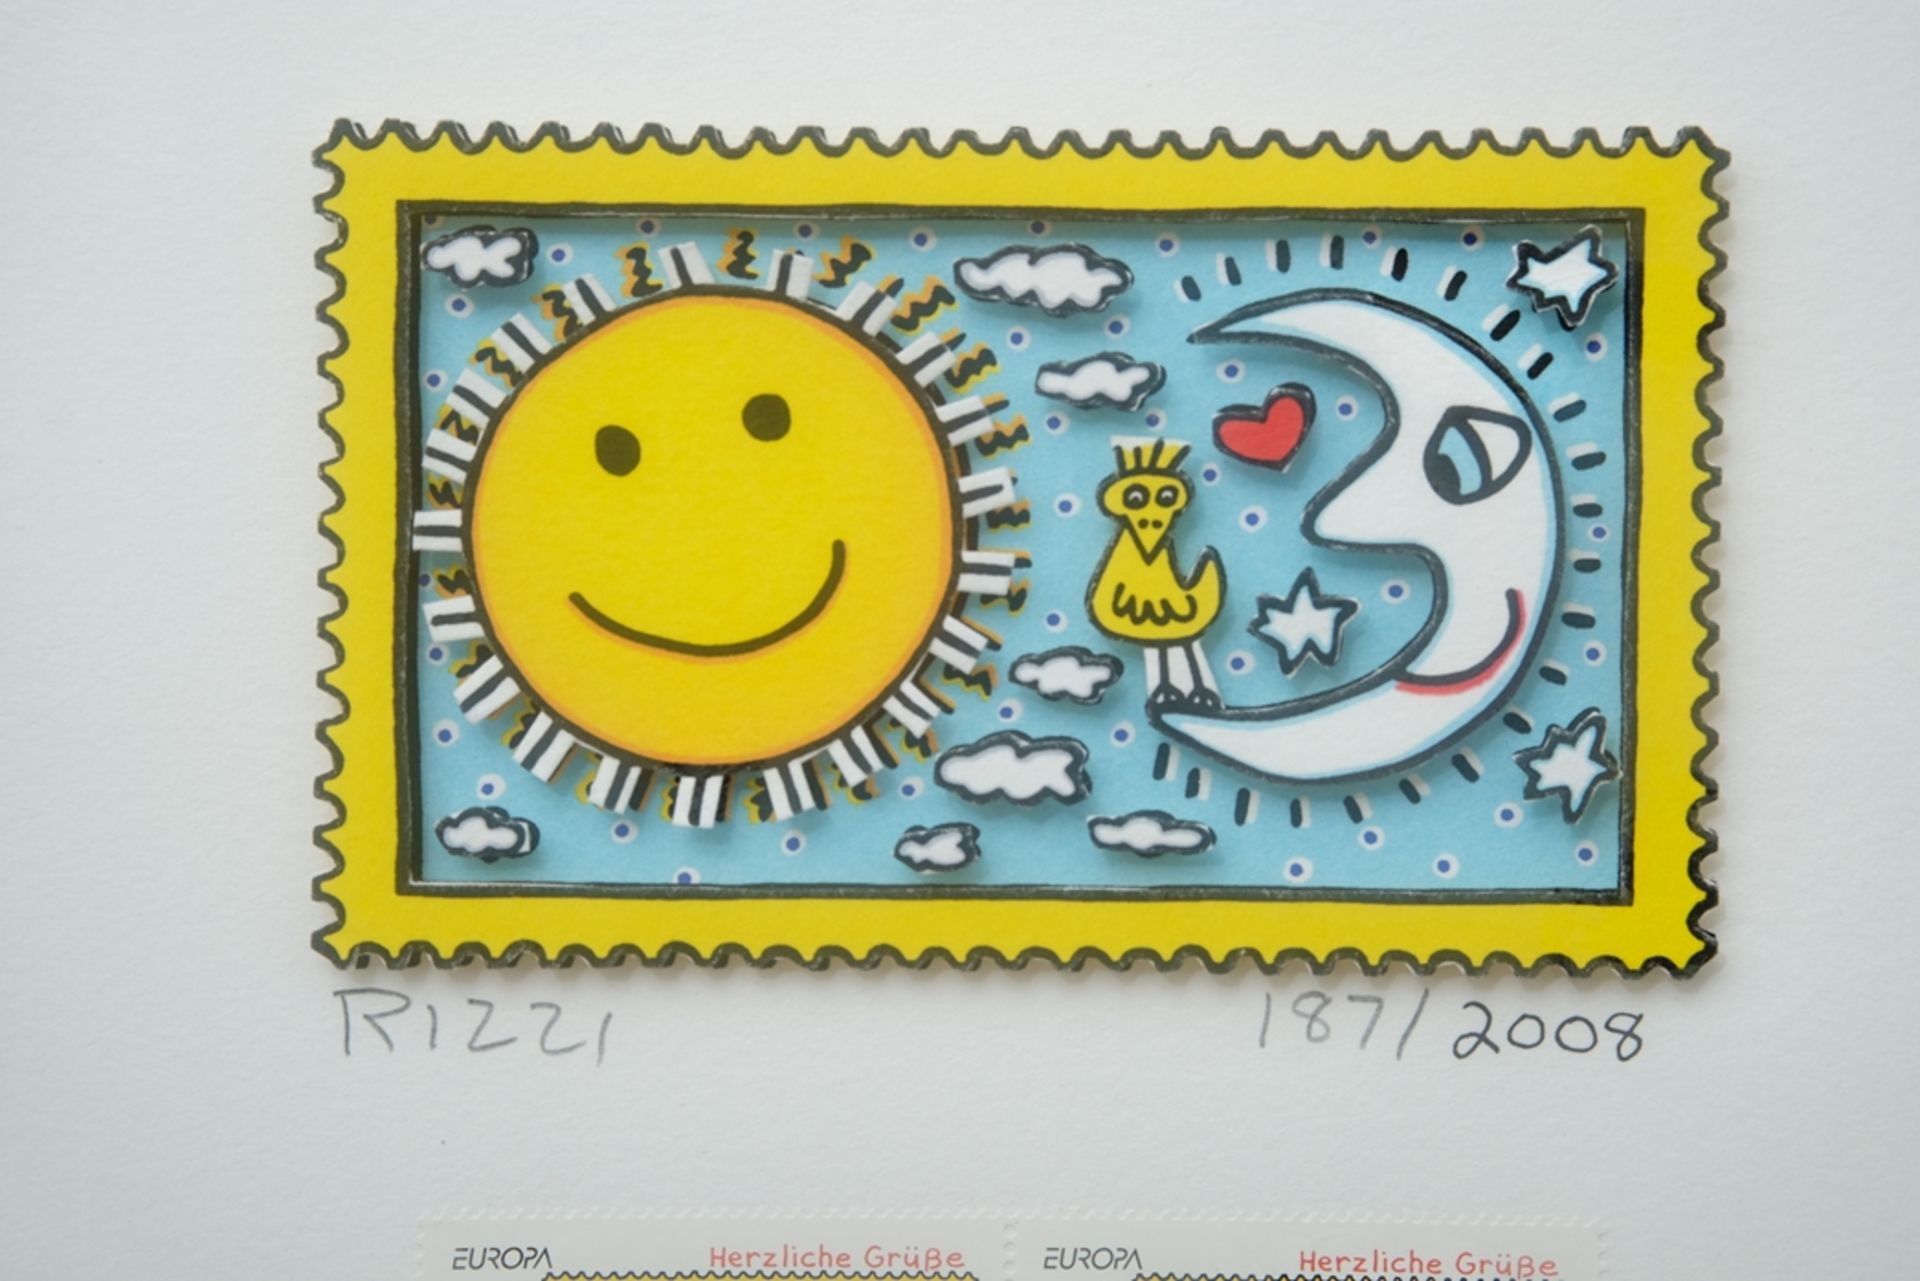 Rizzi, James (1950-2011) "Herzliche Grüße - Sonne und Mond", Briefmarken Sonderedition 2008. 3D-Gra - Bild 2 aus 5